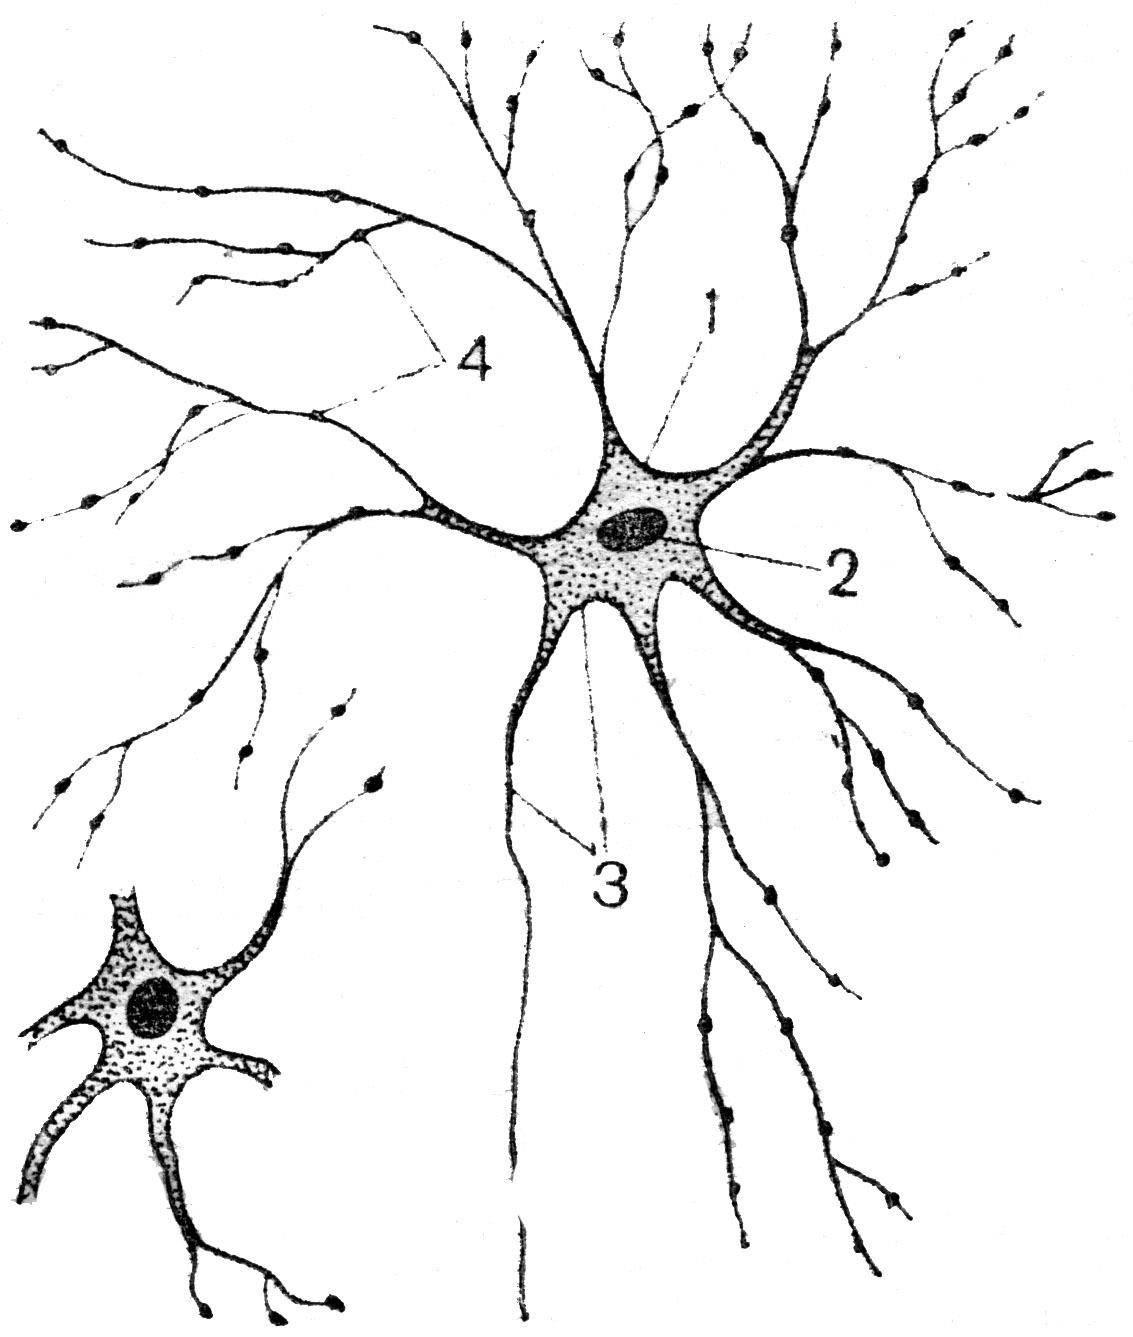 Мультиполярные нервные клетки и нервные волокна сетчатки глаза thumbnail